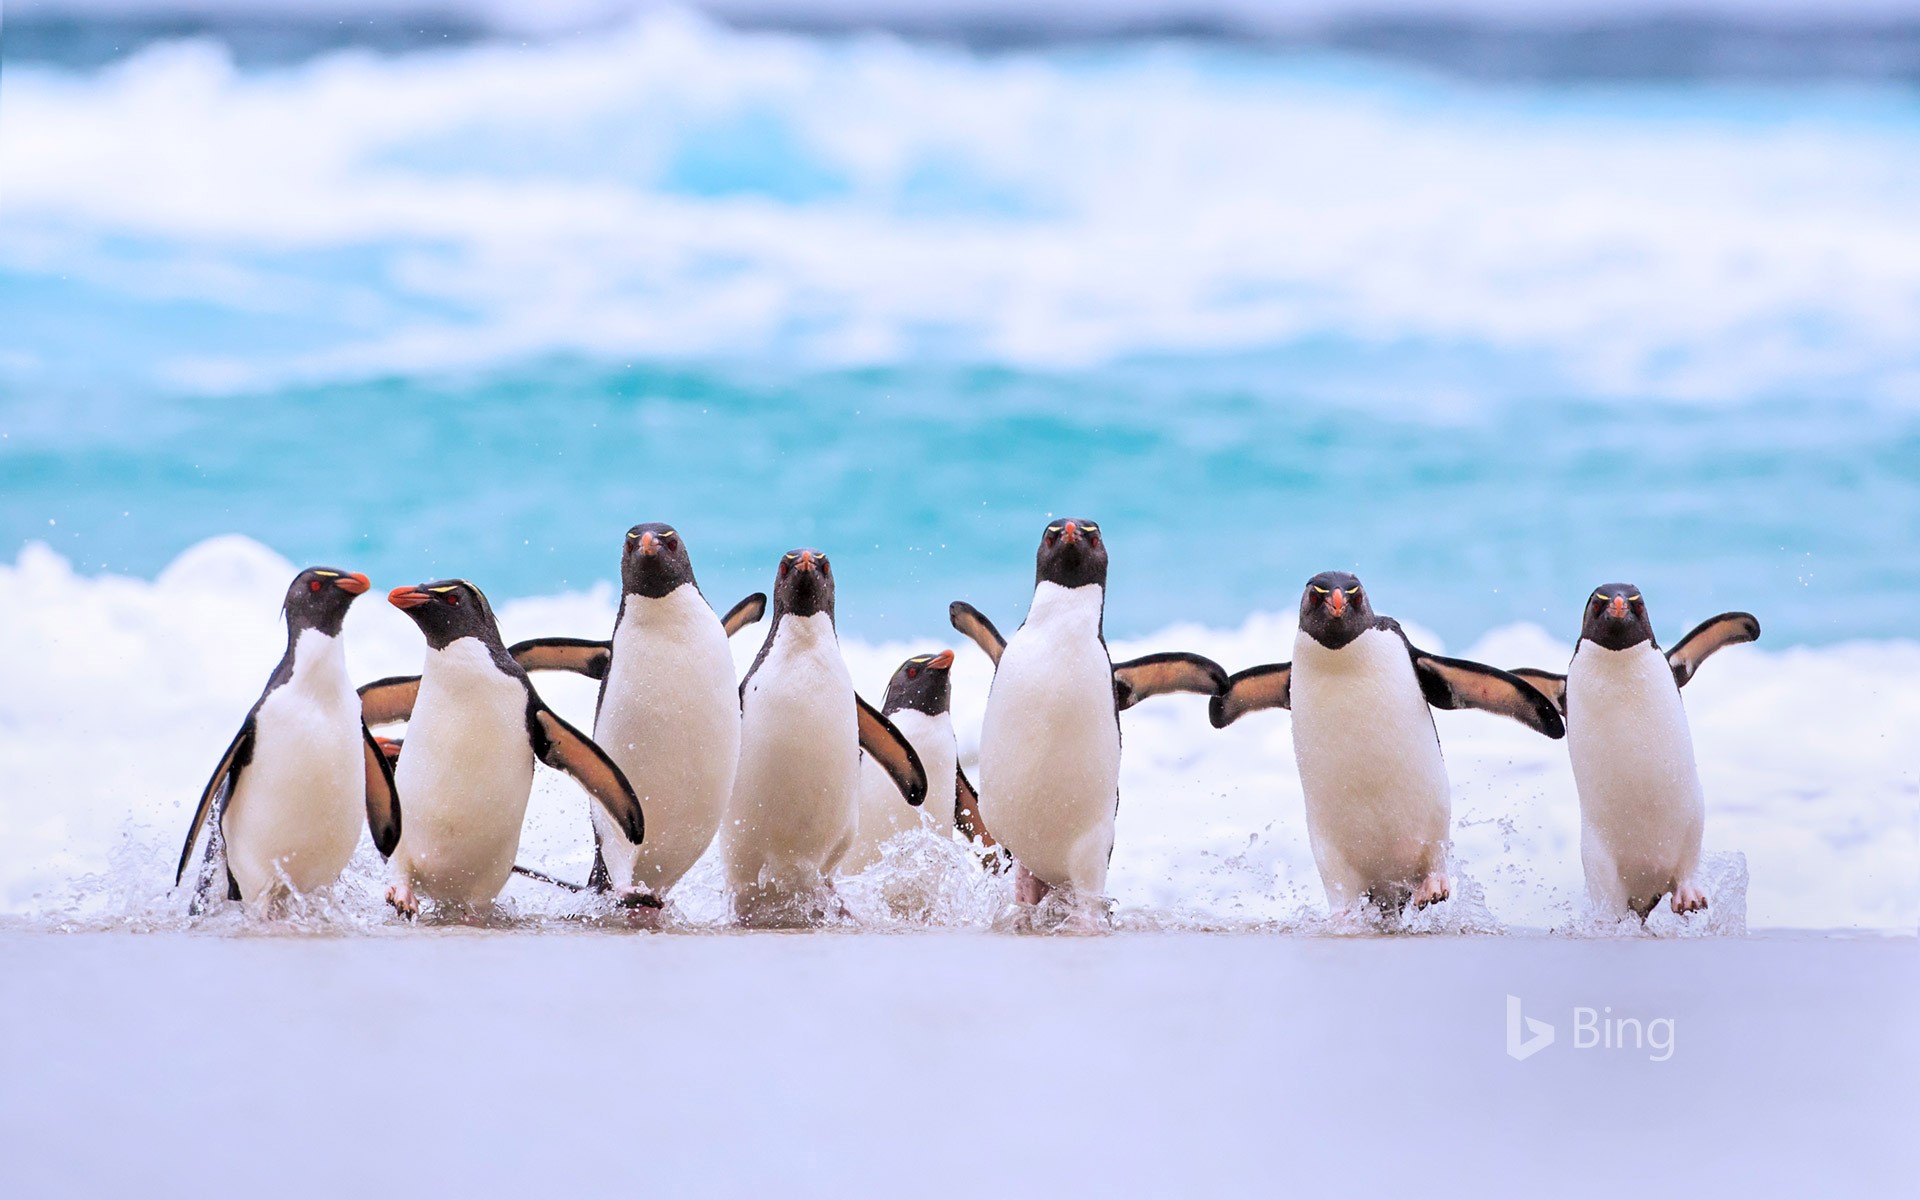 Southern rockhopper penguins in the Falkland Islands